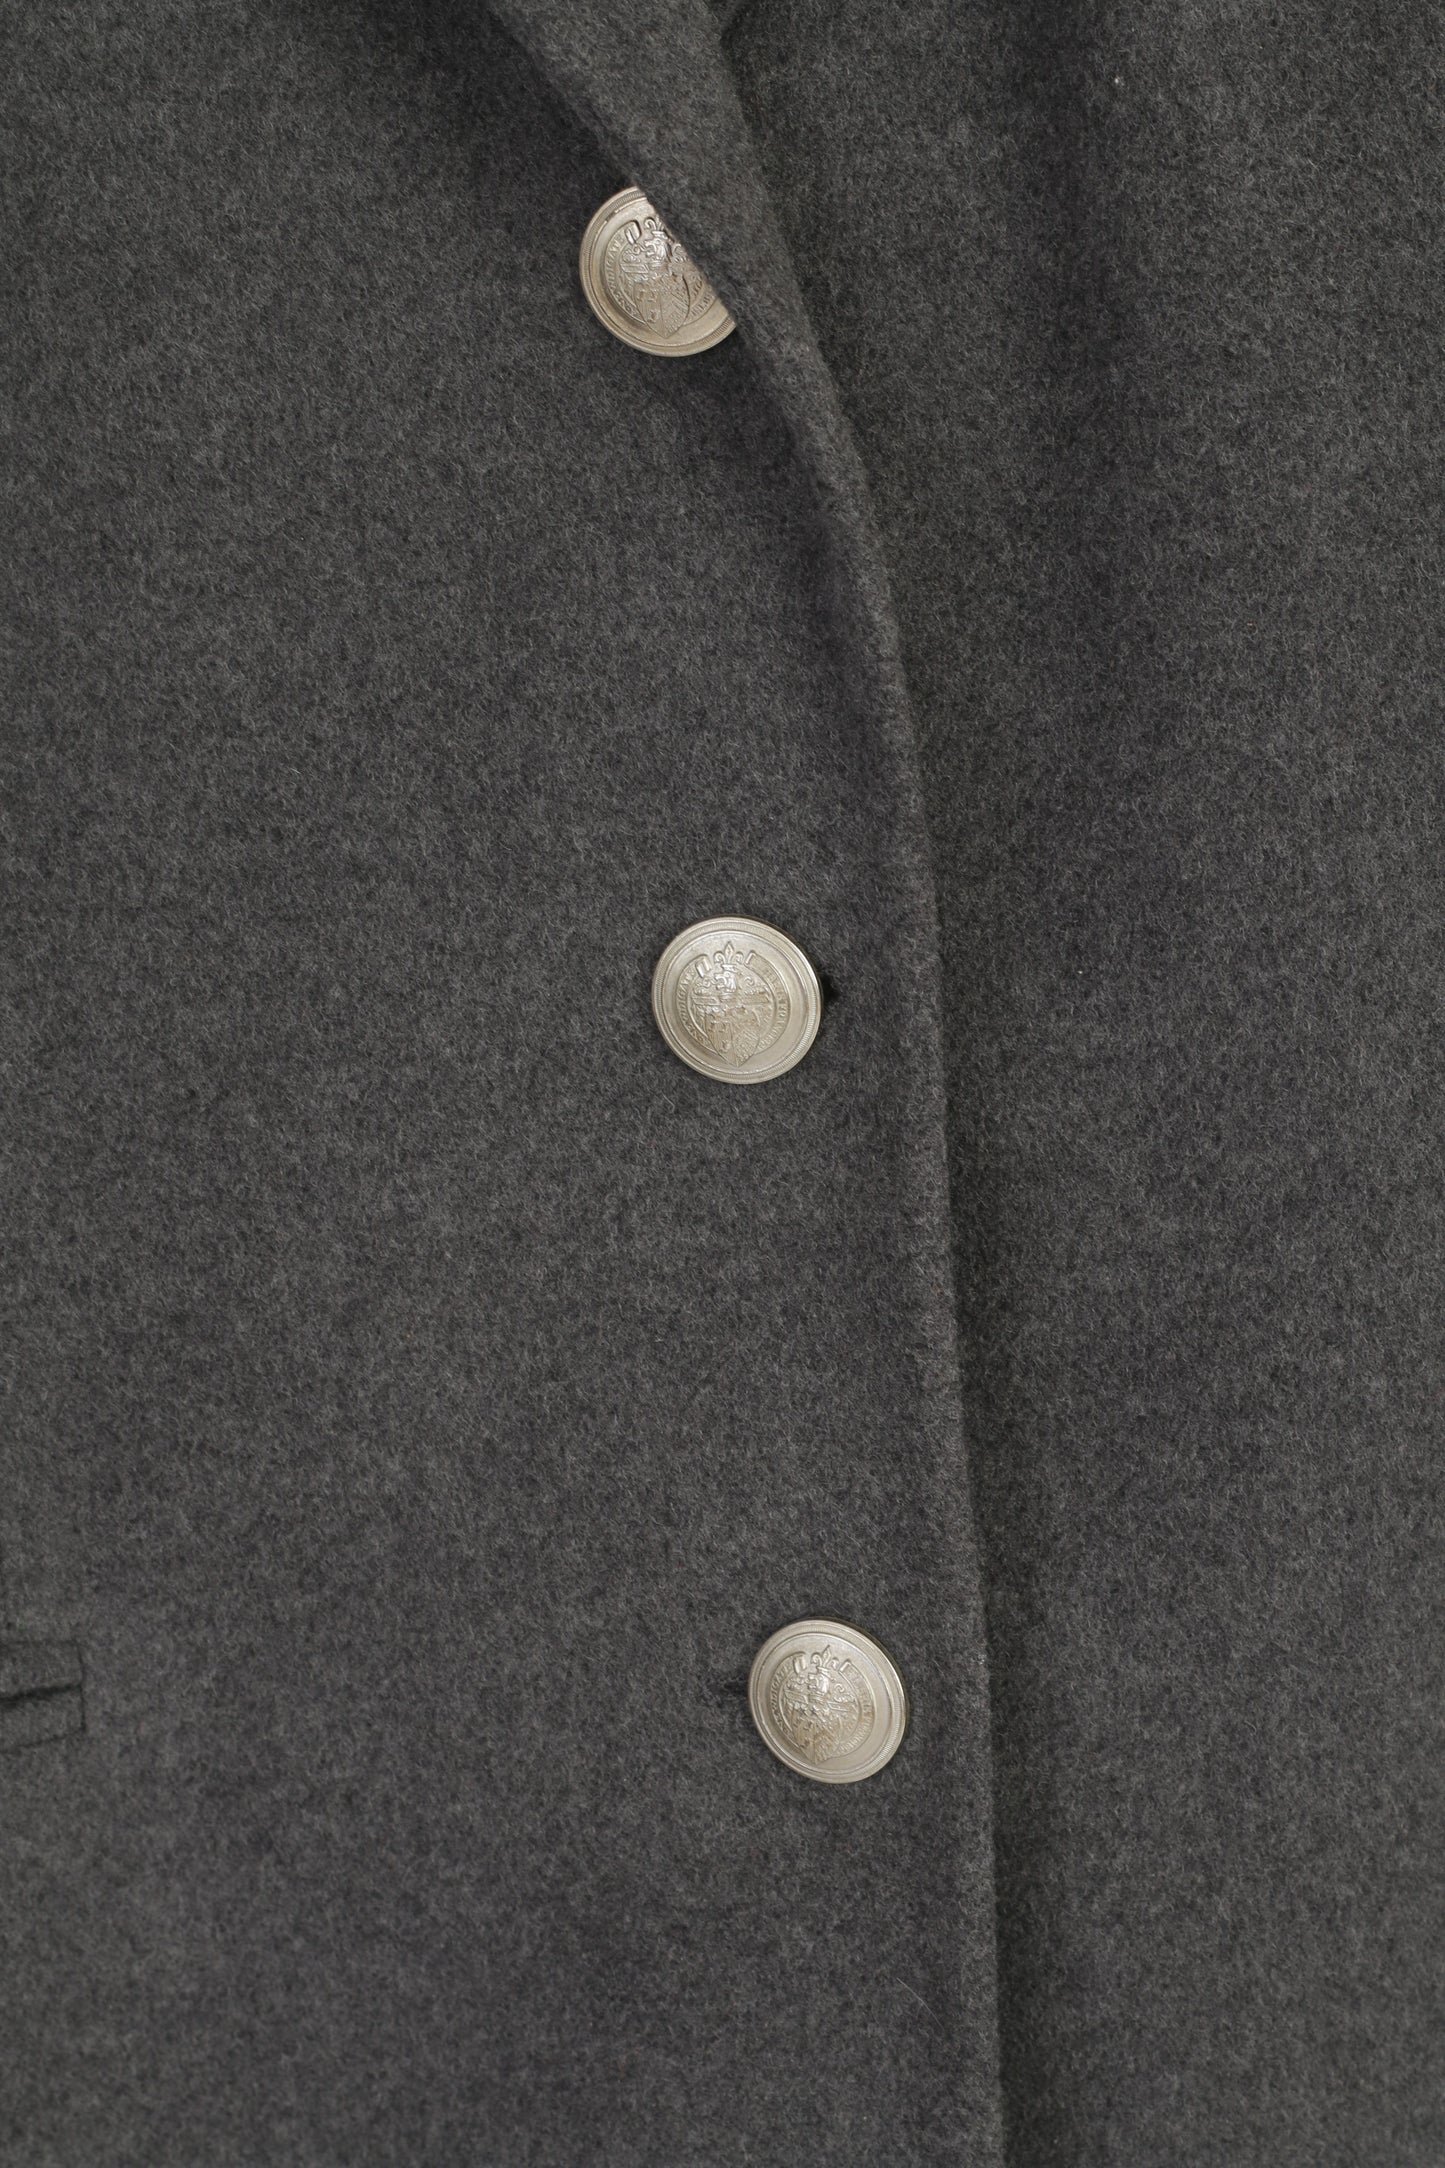 Vittoria Verani Women 20 50 XXL Jacket Grey Virgin Wool Cashmere Vintage Blazer